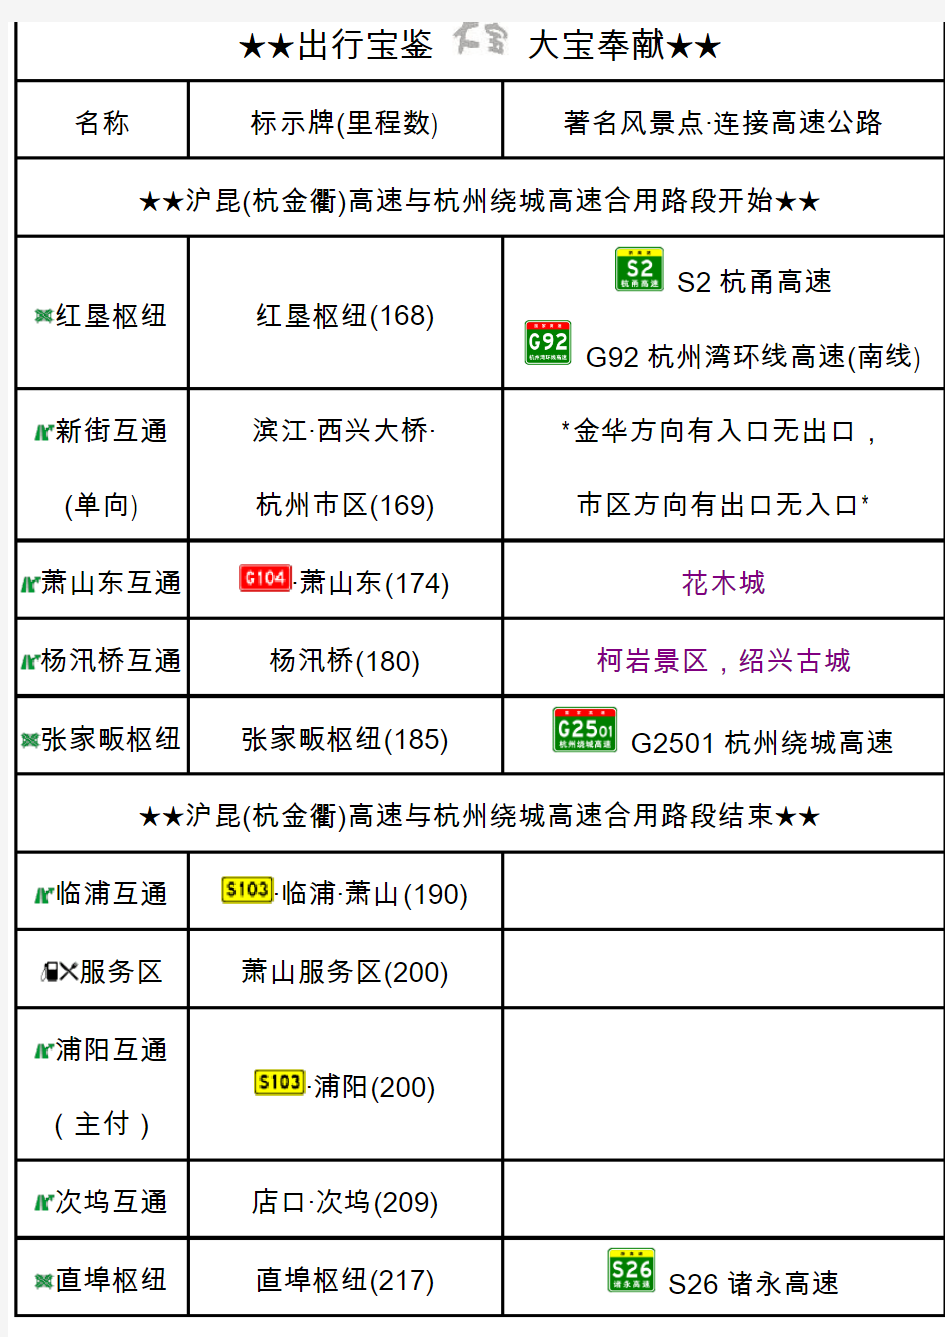 杭金衢(沪昆)高速出入口、服务区、里程数及风景区